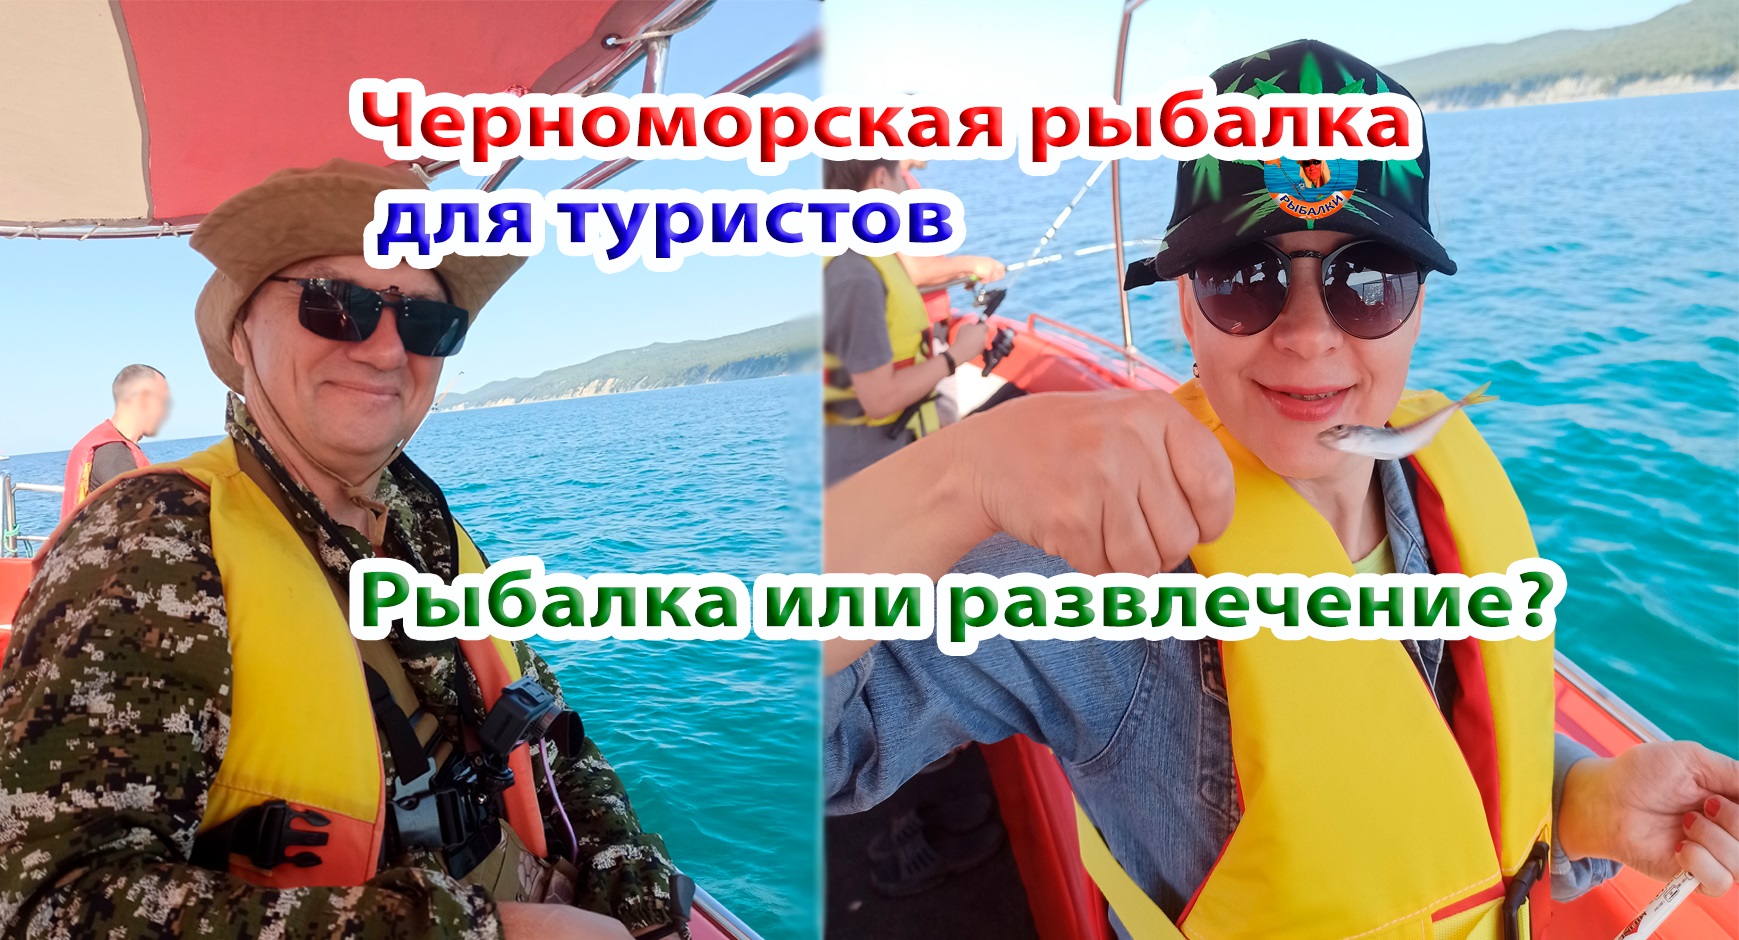 Черноморская рыбалка для туристов от зазывал на пляже. Что из себя представляет... Архипо-Осиповка.